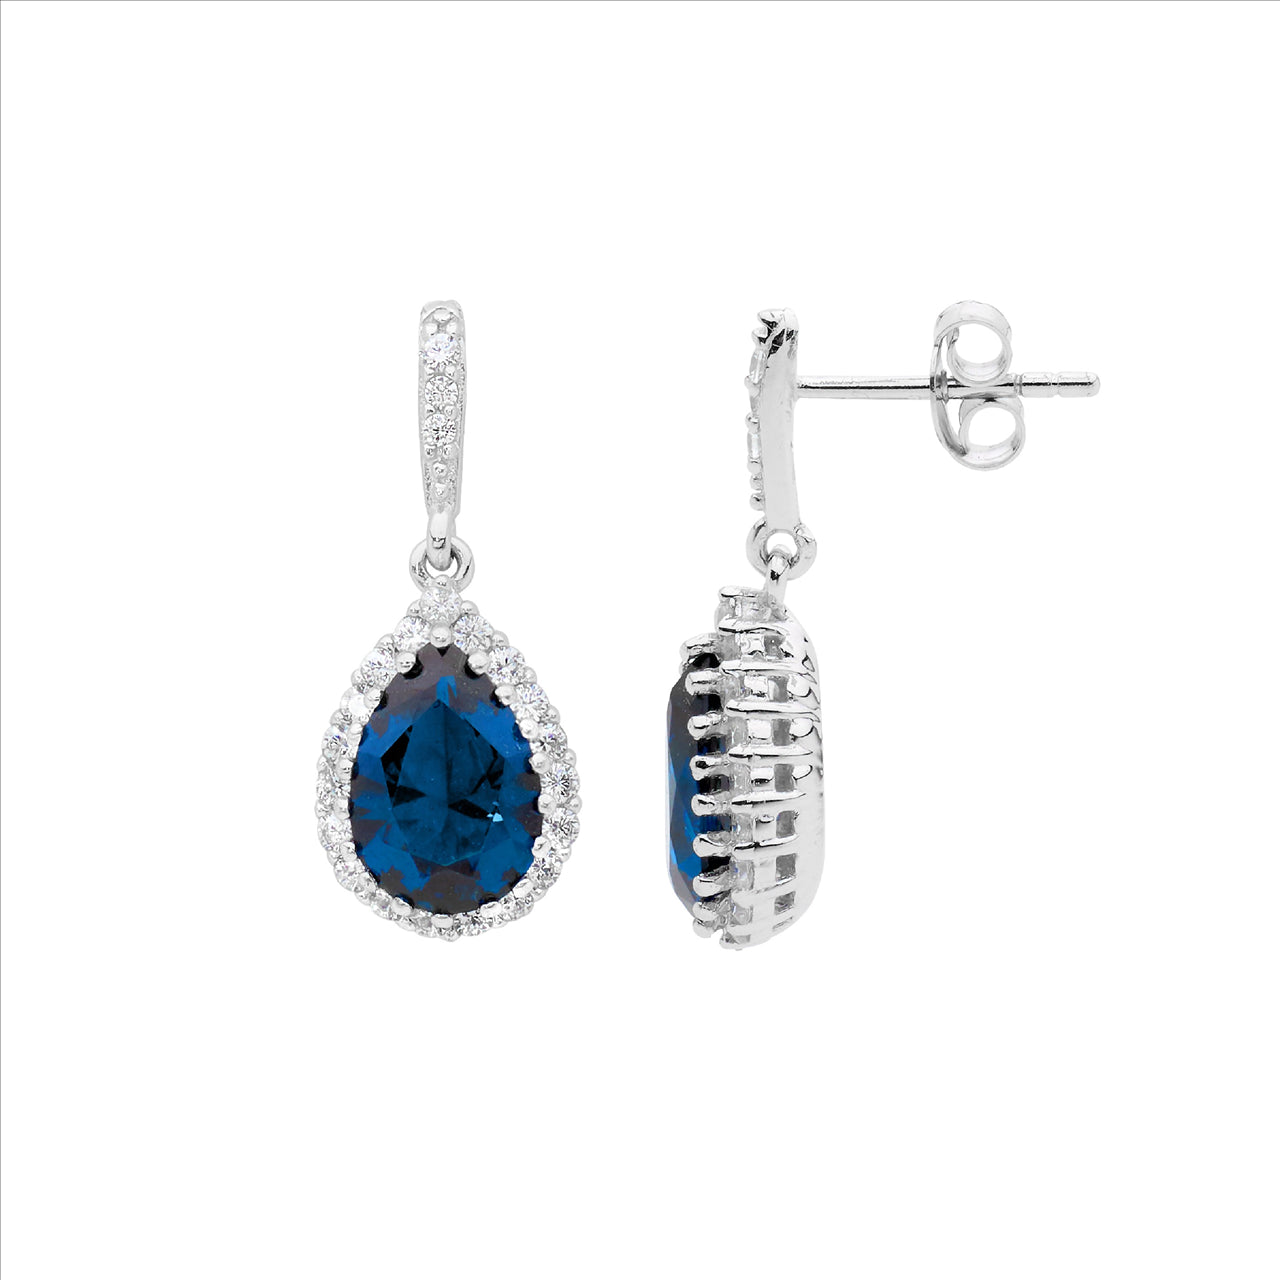 White & London Blue CZ Pear Halo Drop Earrings